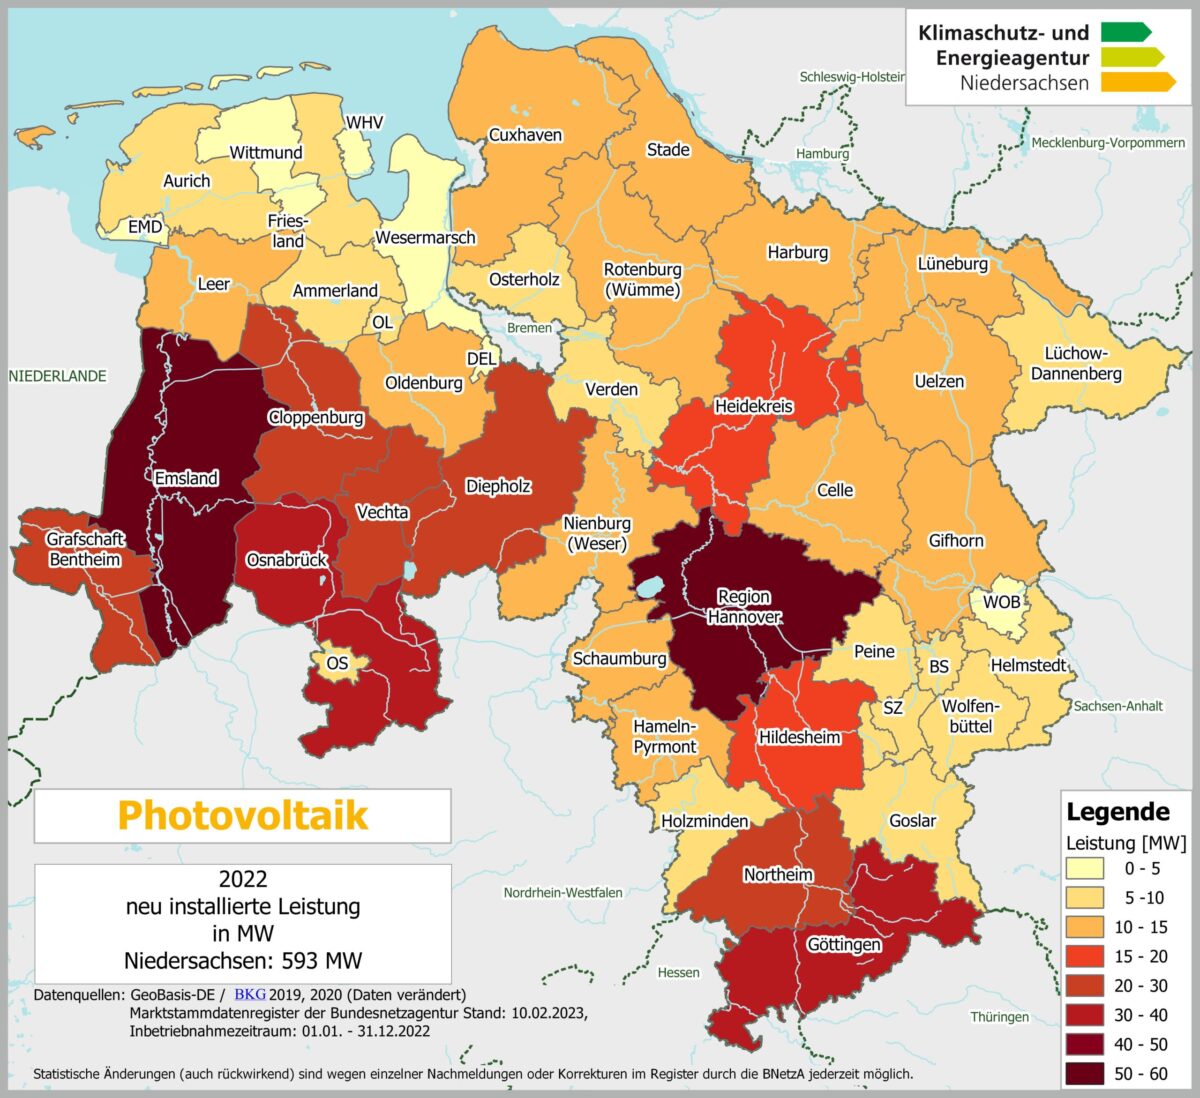 PV-Zubau in Niedersachsen / Grafik: Klimaschutz- und Energieagentur Niedersachsen